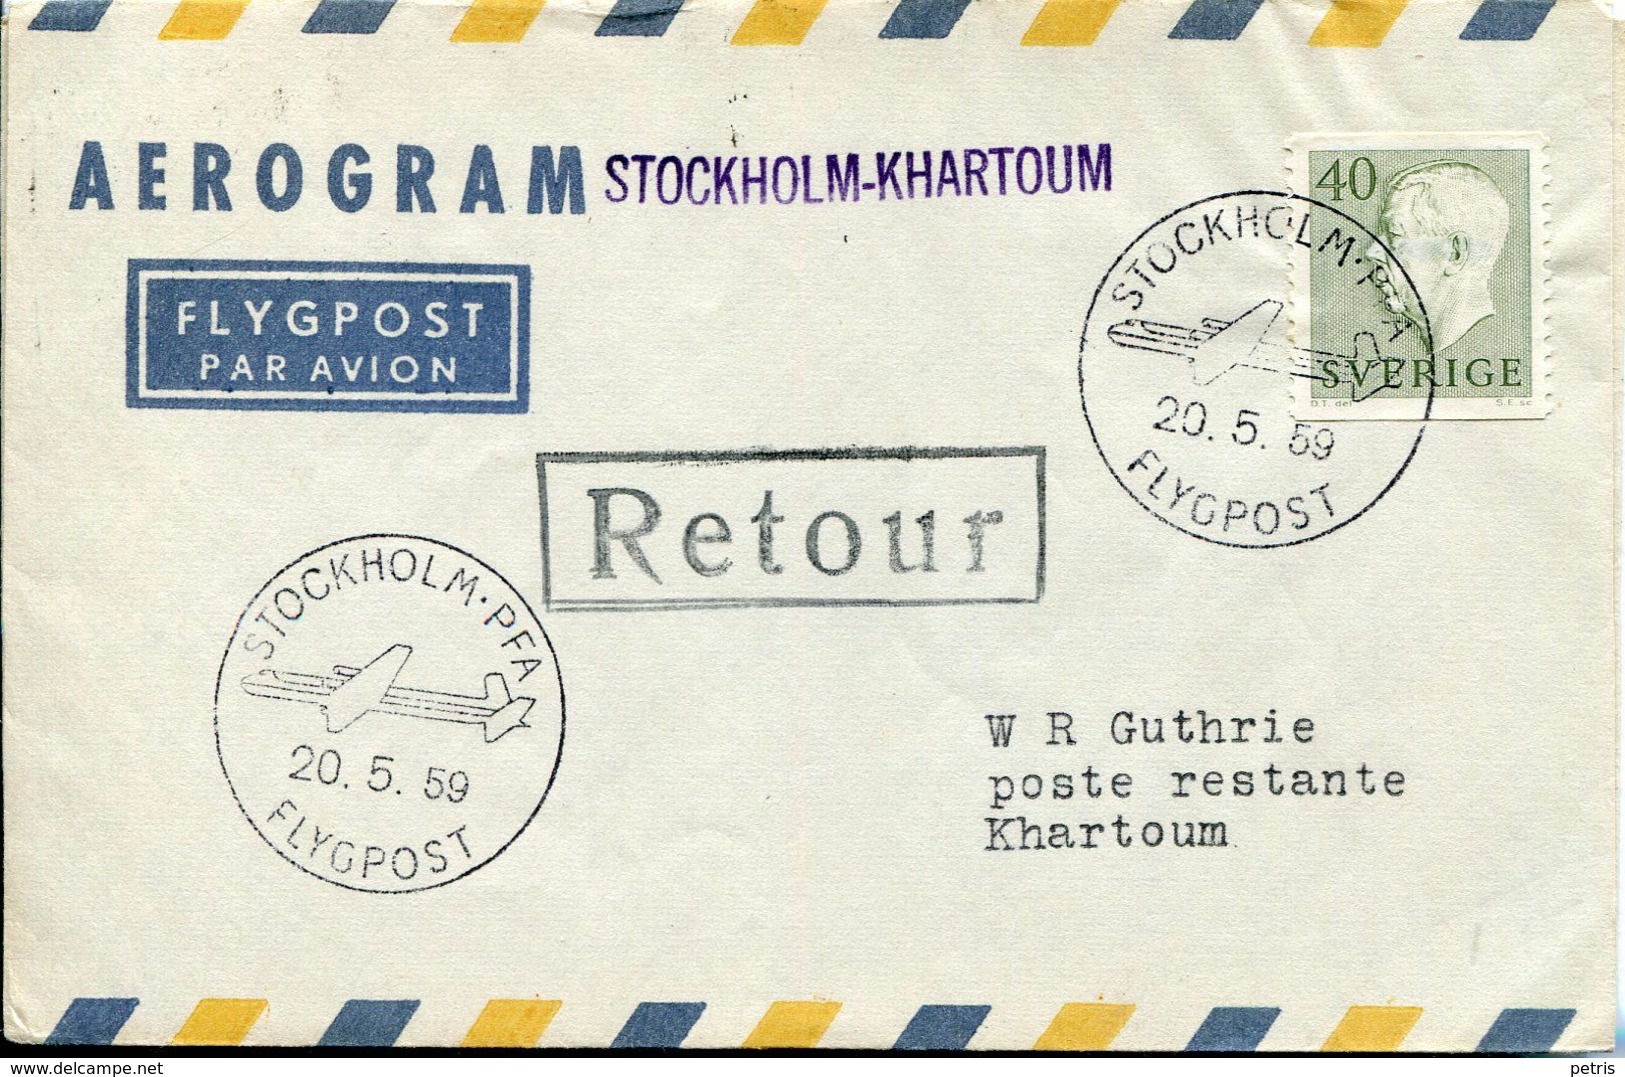 Sverige 1959 Aerogram  First Flight Jet Flygpost - Lot. 506 - Variétés Et Curiosités